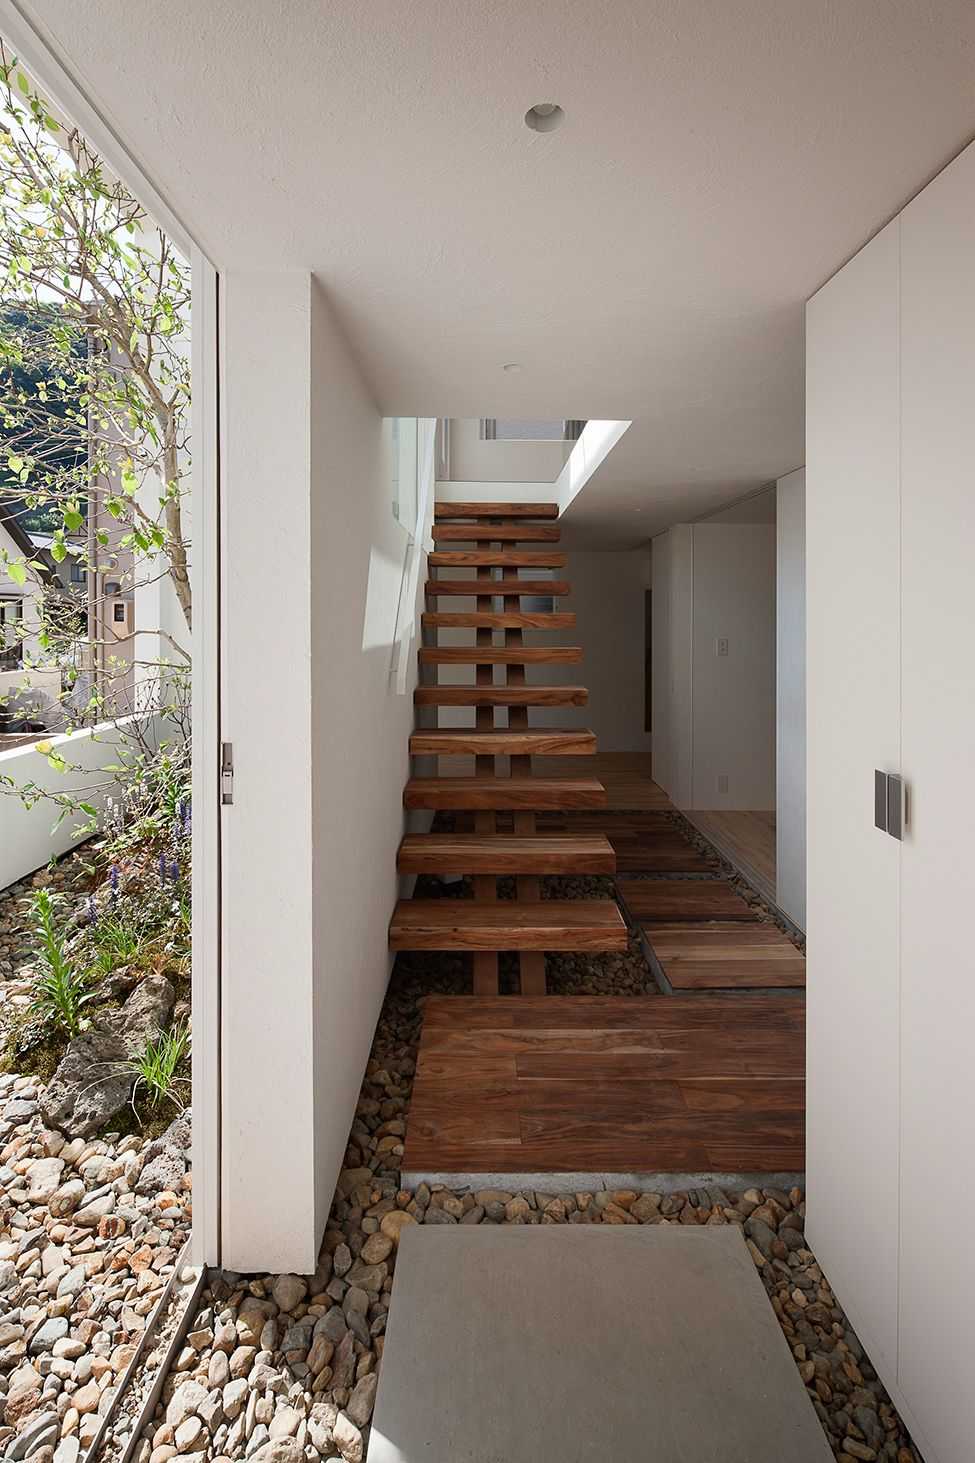 Отделка лестницы в частном доме: самые популярные идеи (ламинатом, плиткой, камнем). выбыраем только практичные и надежные материалы (160+ фото)